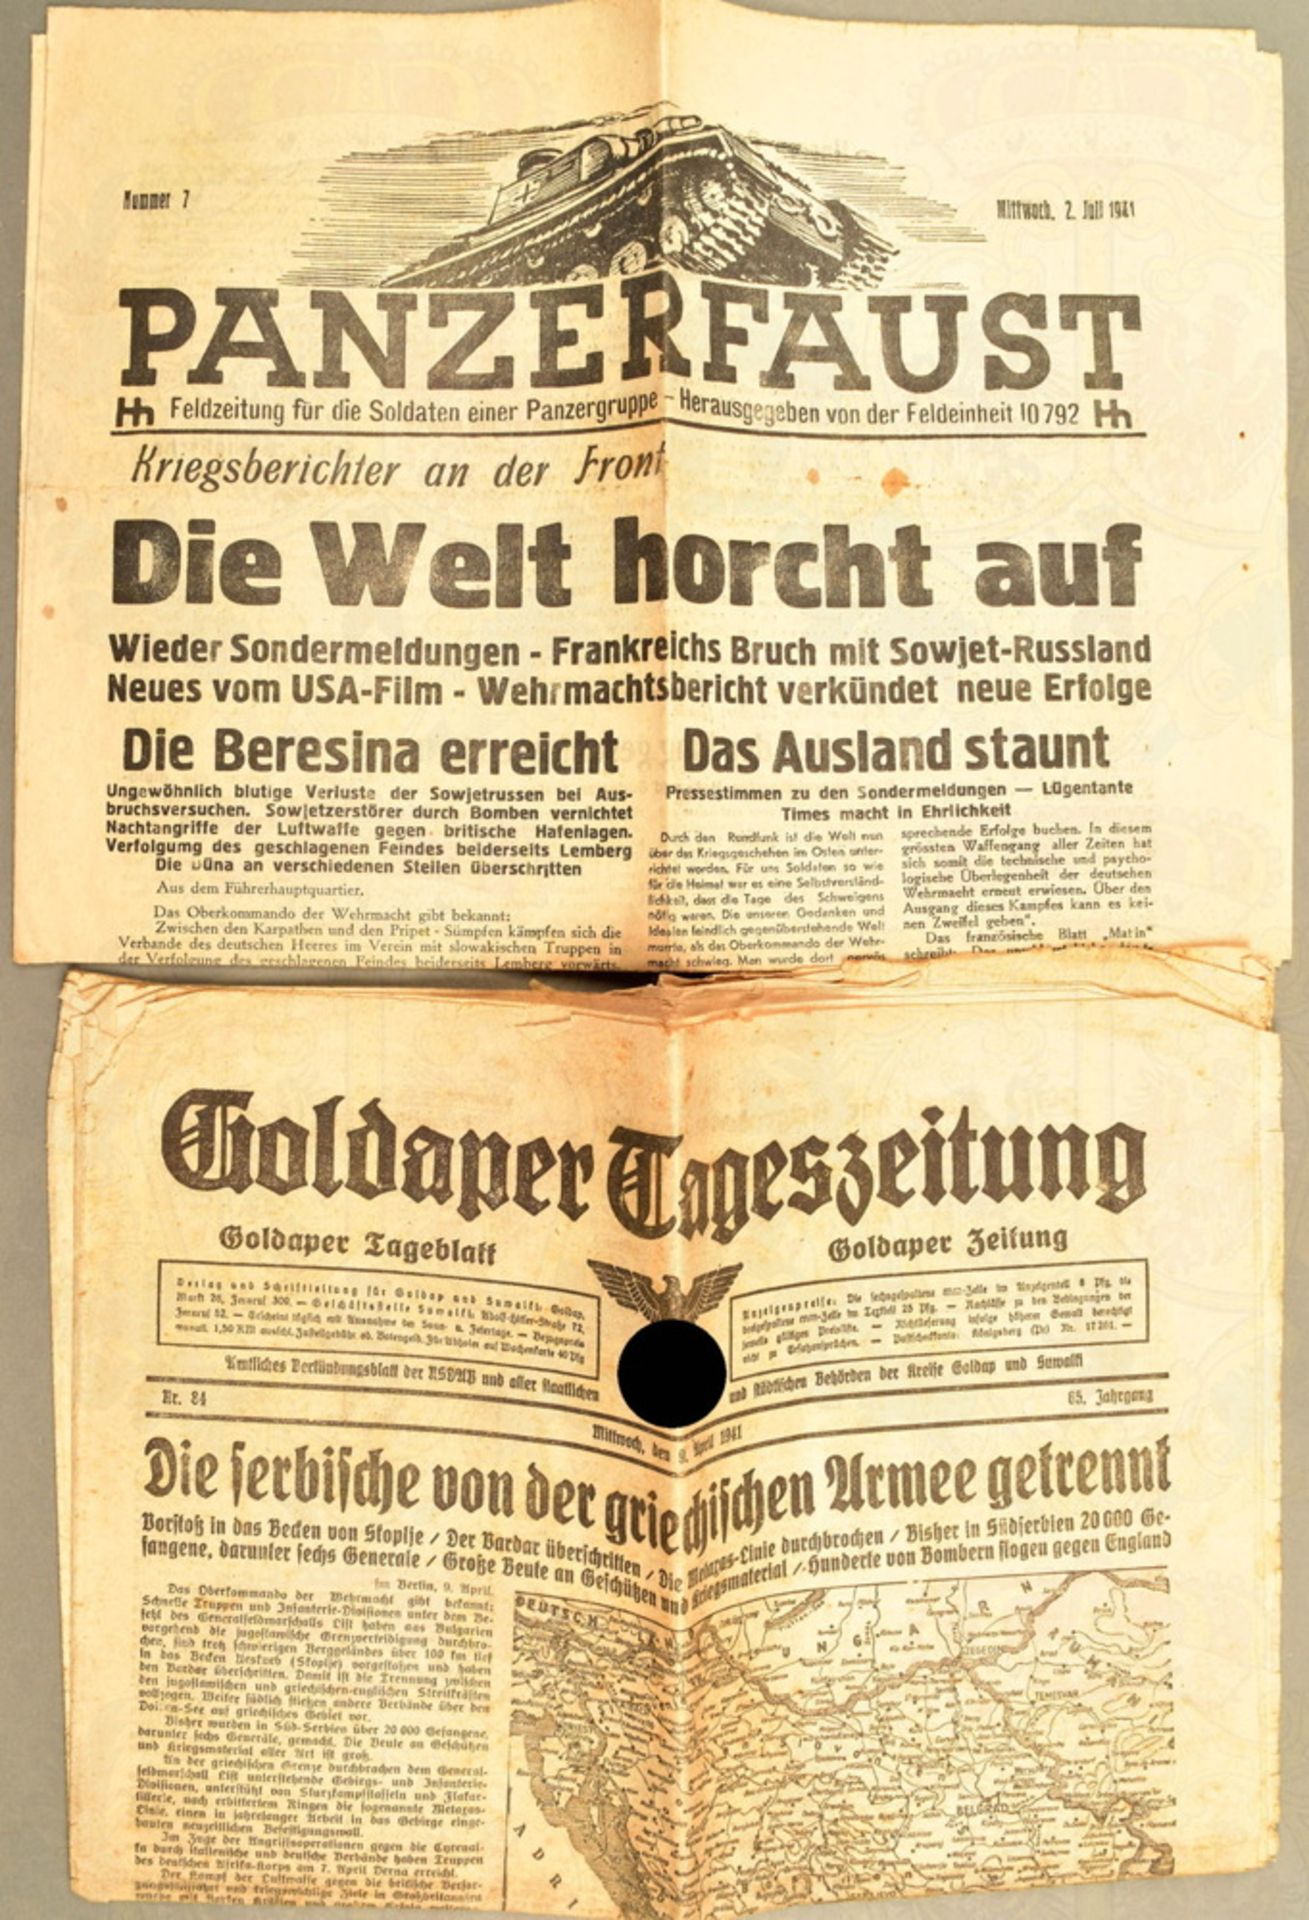 Feldzeitung "Panzerfaust" 3. Panzergruppe